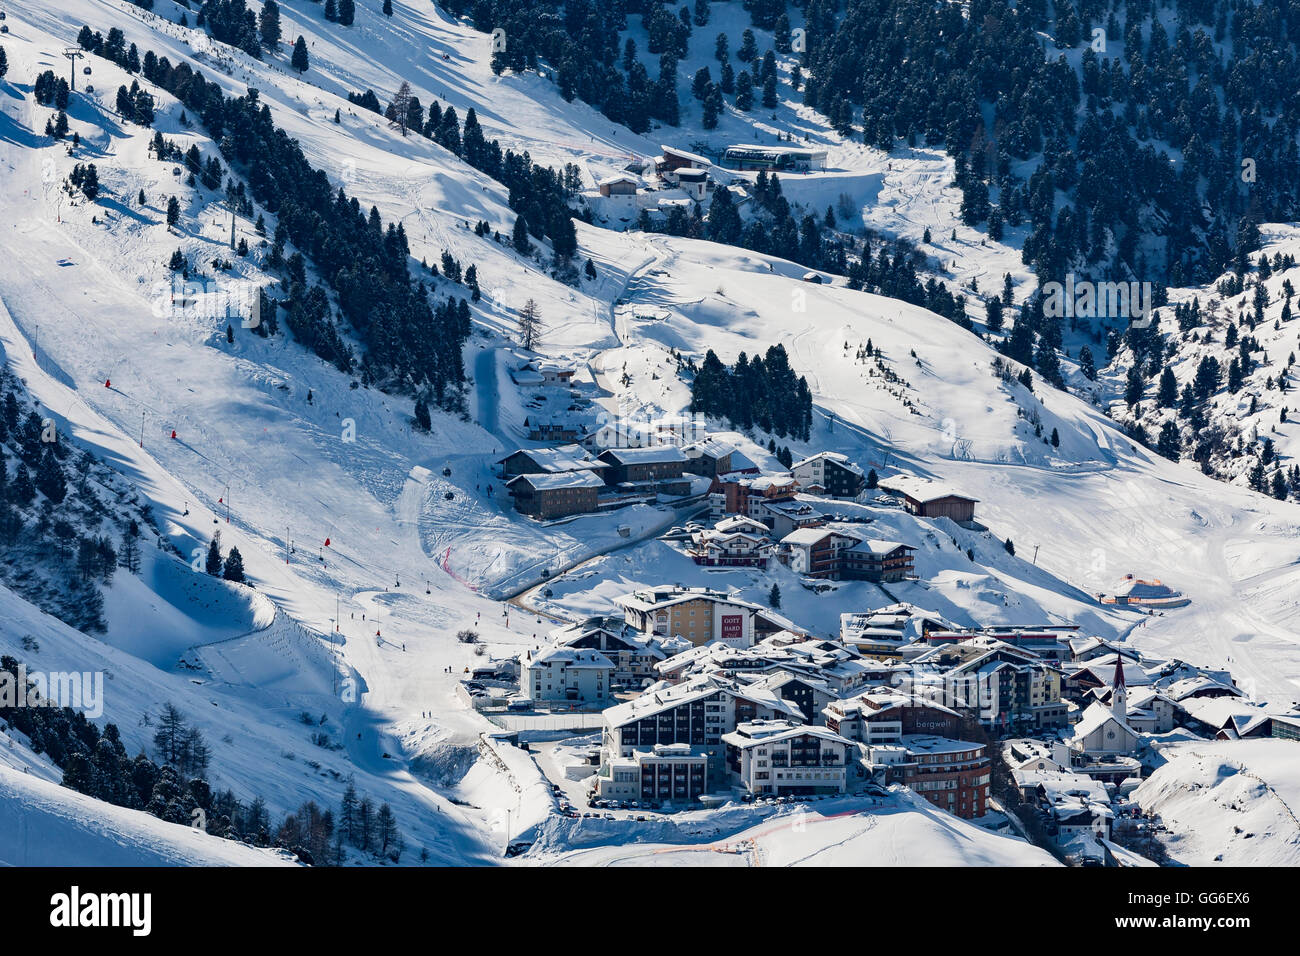 Le village d''Obergurgl ski autrichienne couverte en hiver la neige à la fin de la vallée de l'Otztal, Tyrol, Autriche, Europe Banque D'Images